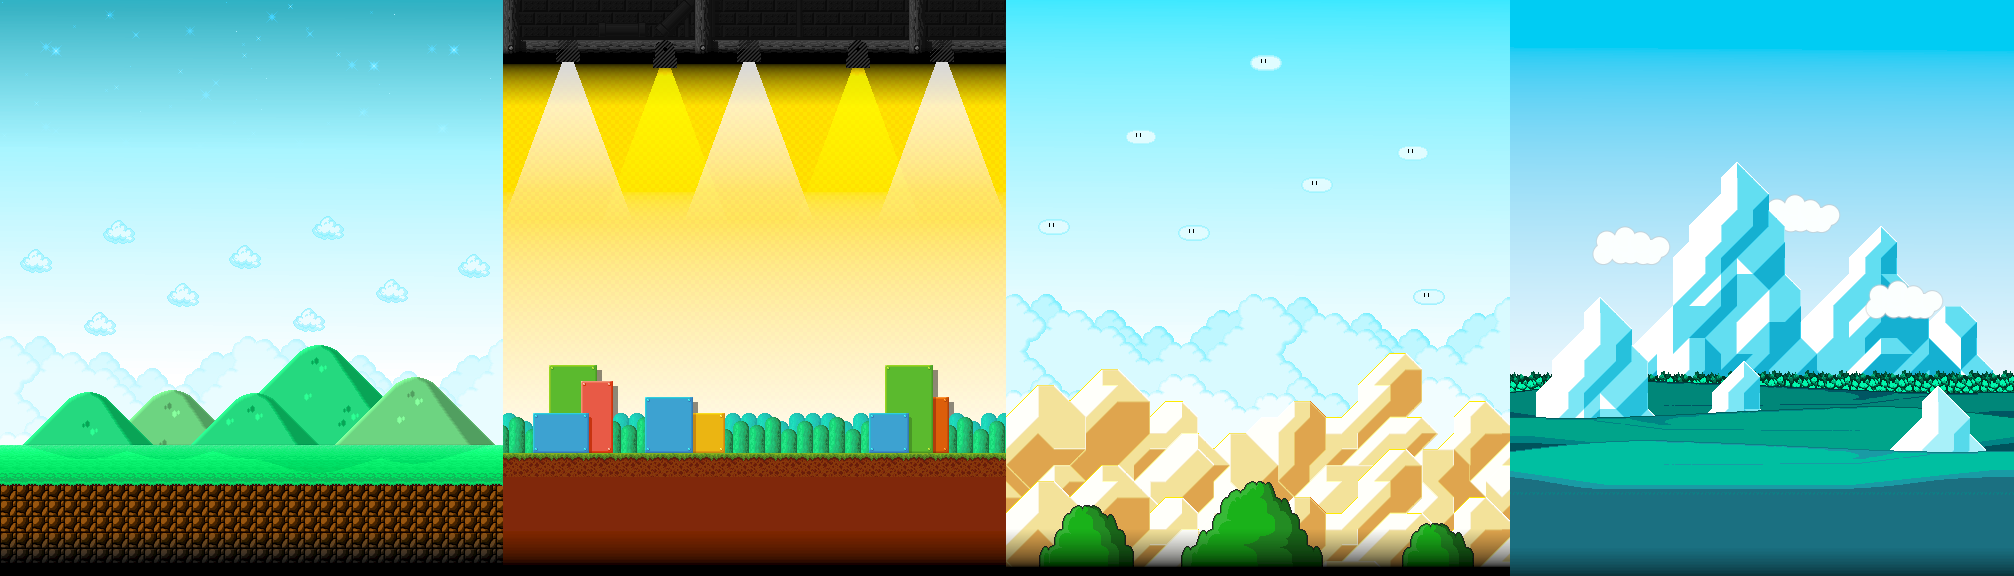 Super Mario UniMaker - Extra Level Backgrounds